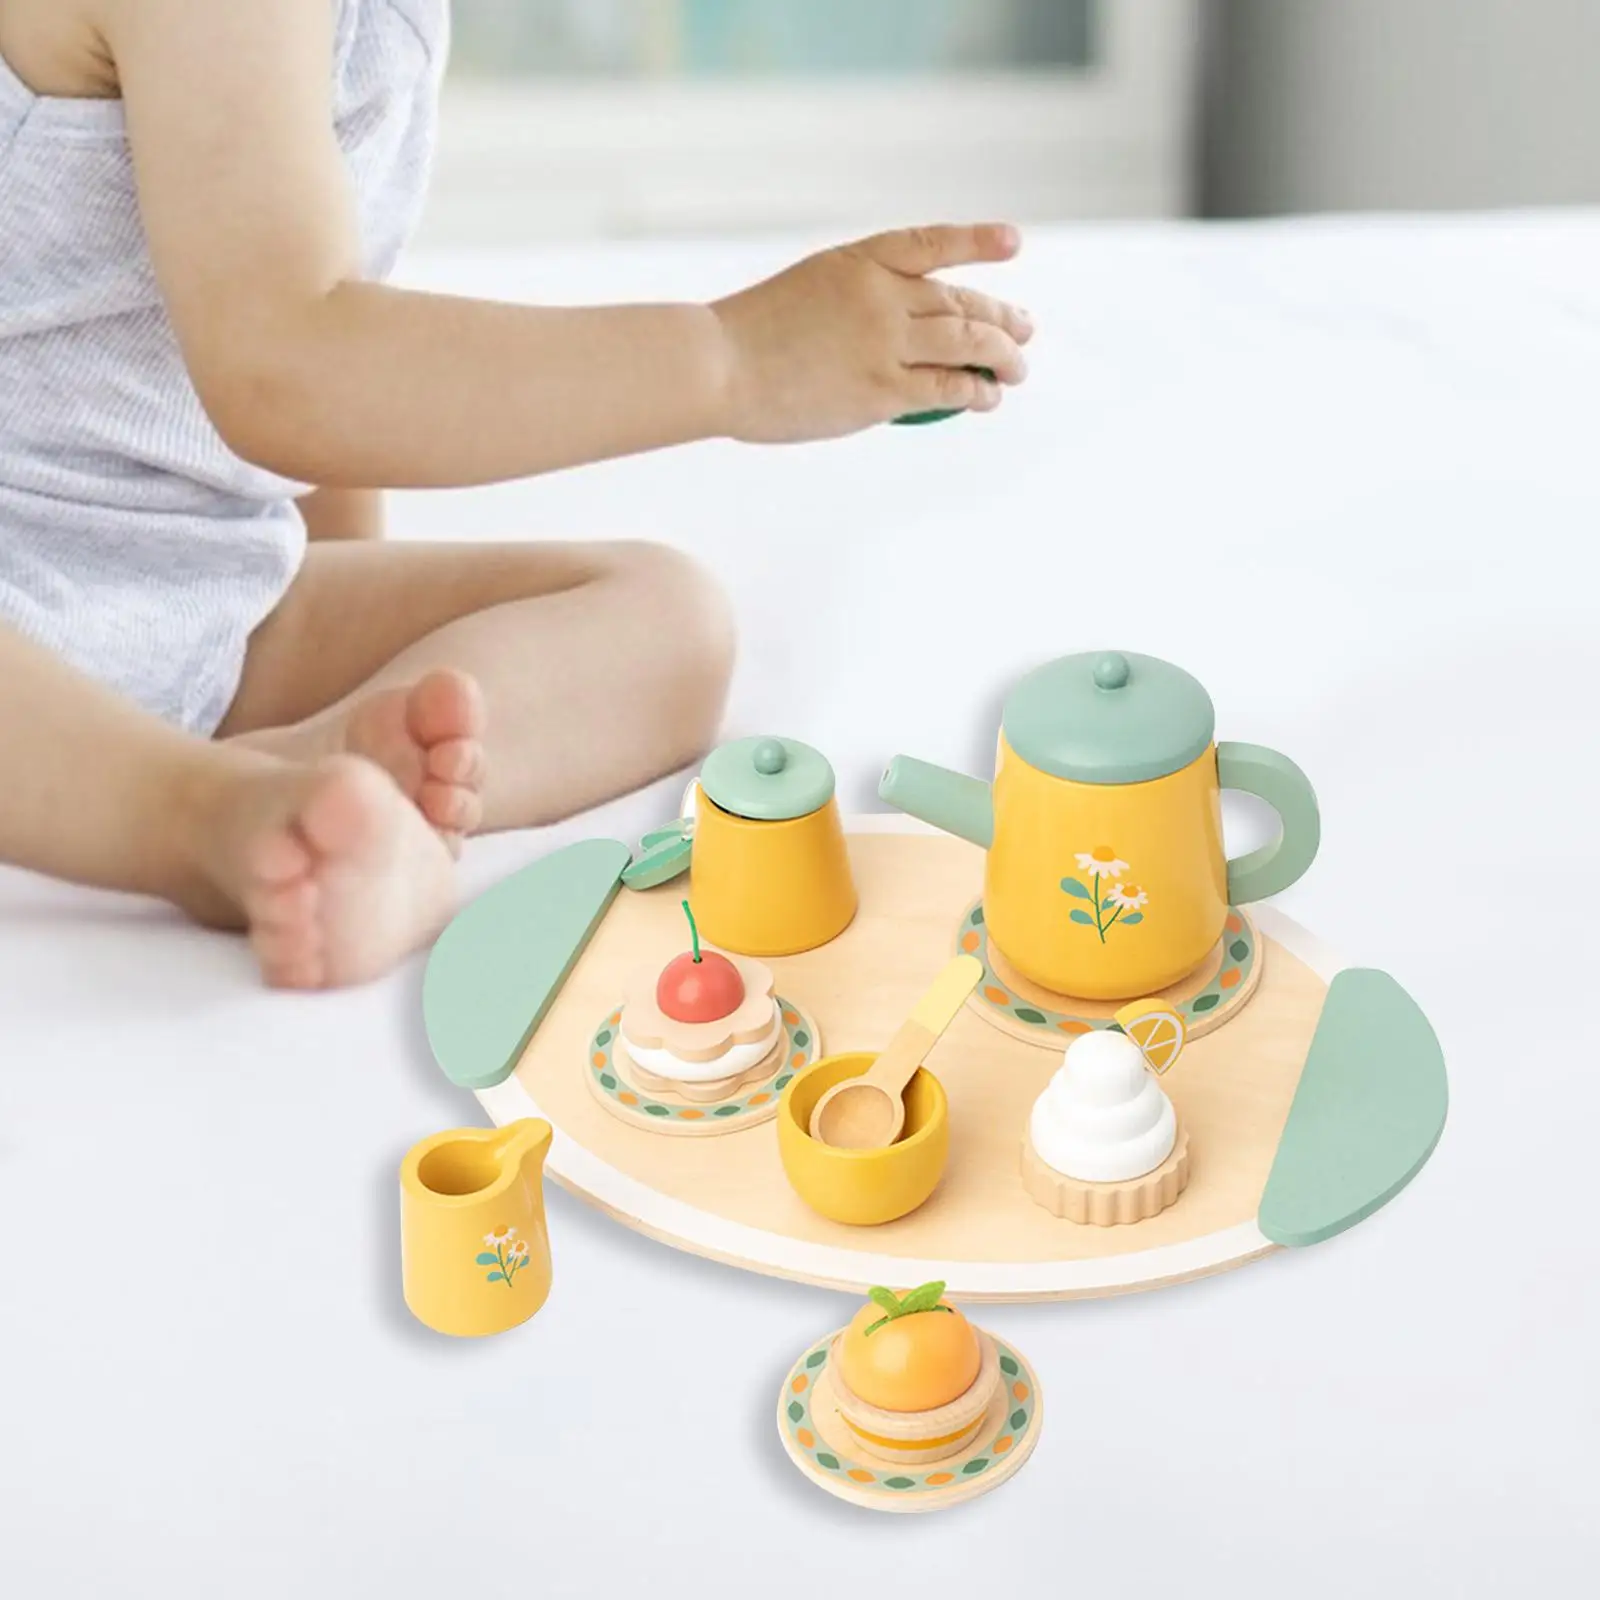 Wooden Tea Set Toys Mini Teapot Plates Playset Princess Playset Miniature Tea Set Cake Toys for Children Birthday Gift